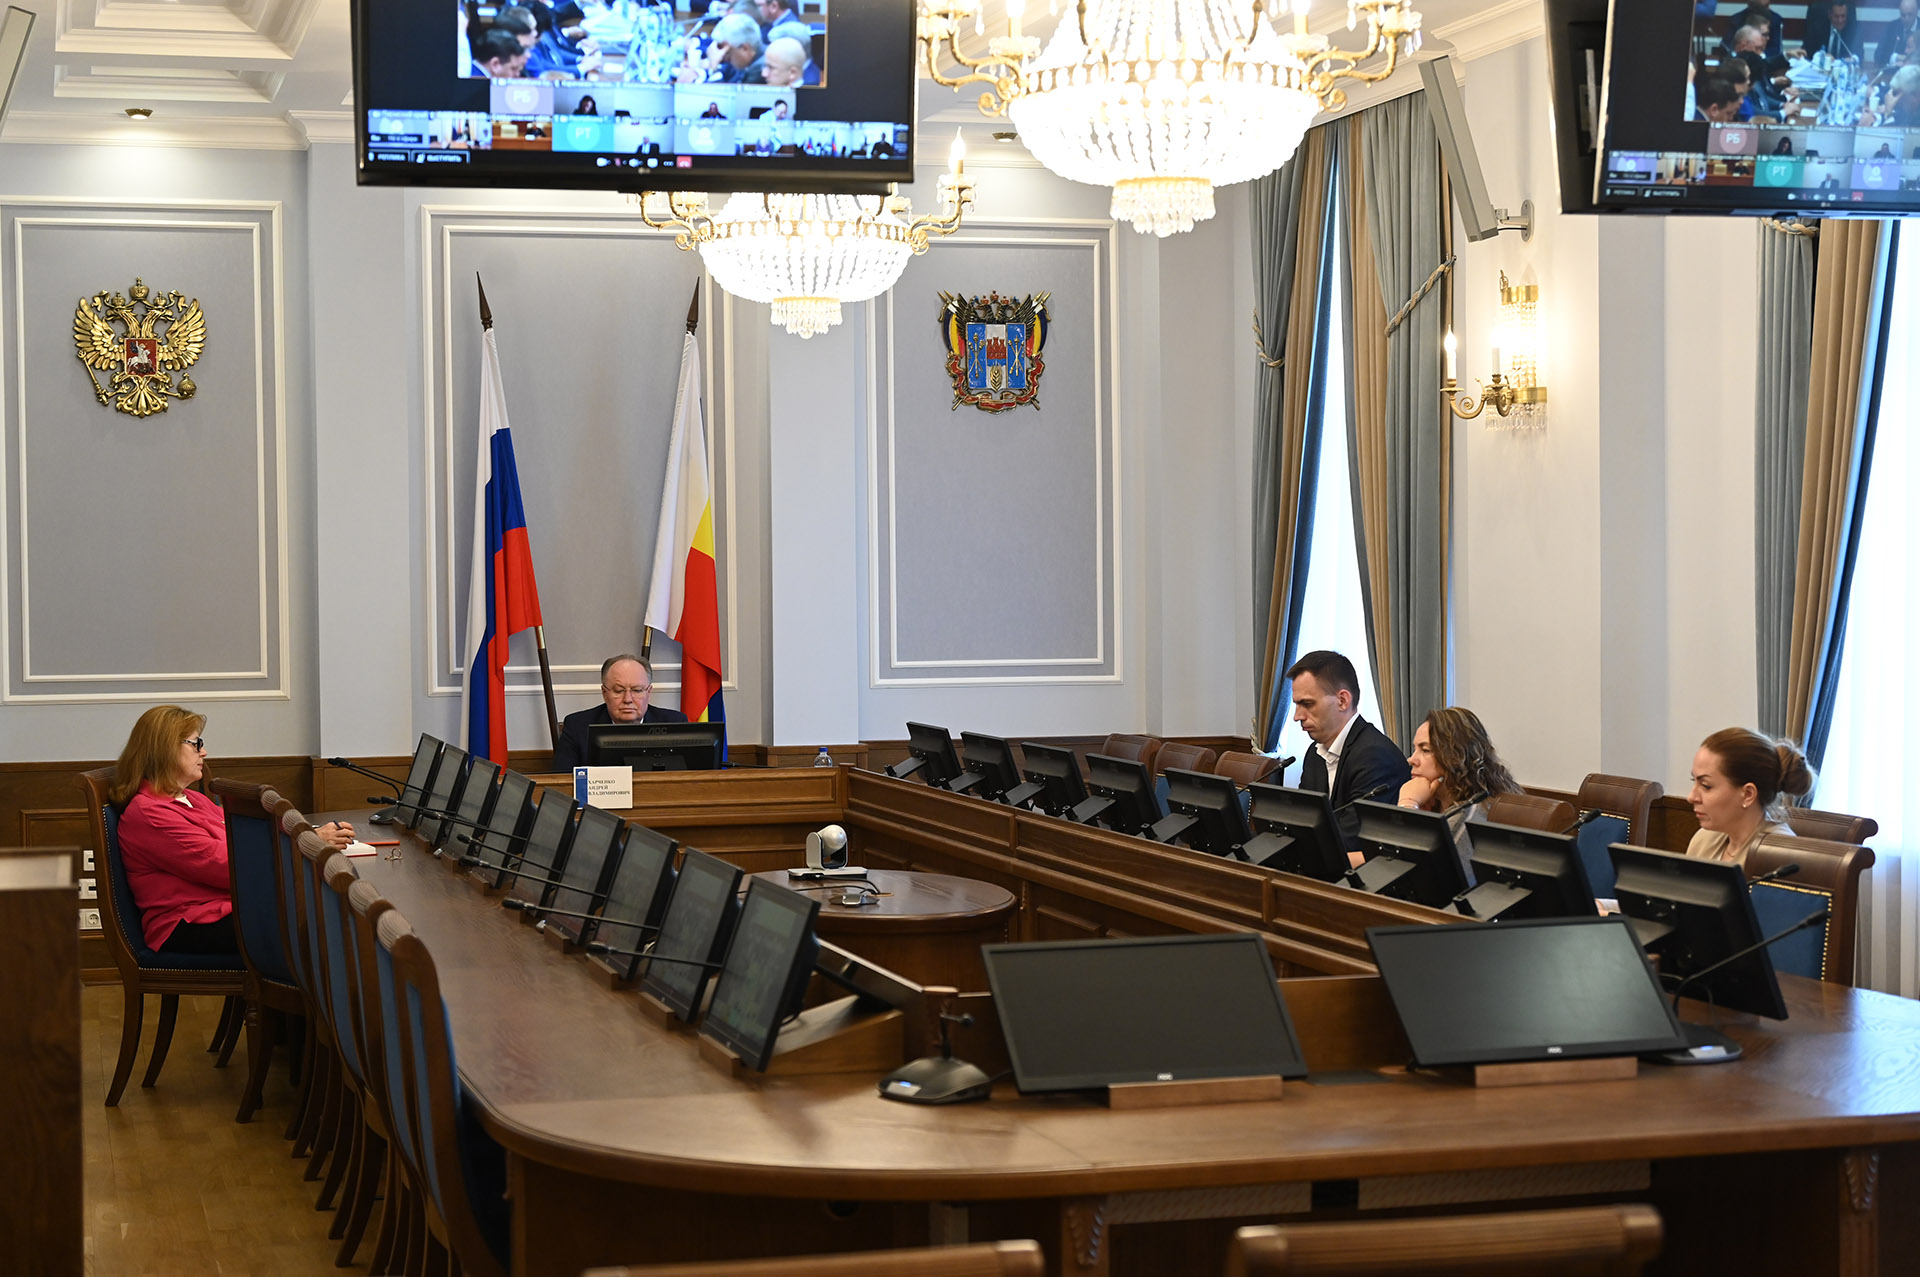 Андрей Харченко: «Государство публично и открыто обсуждает совершенствование налогового законодательства»